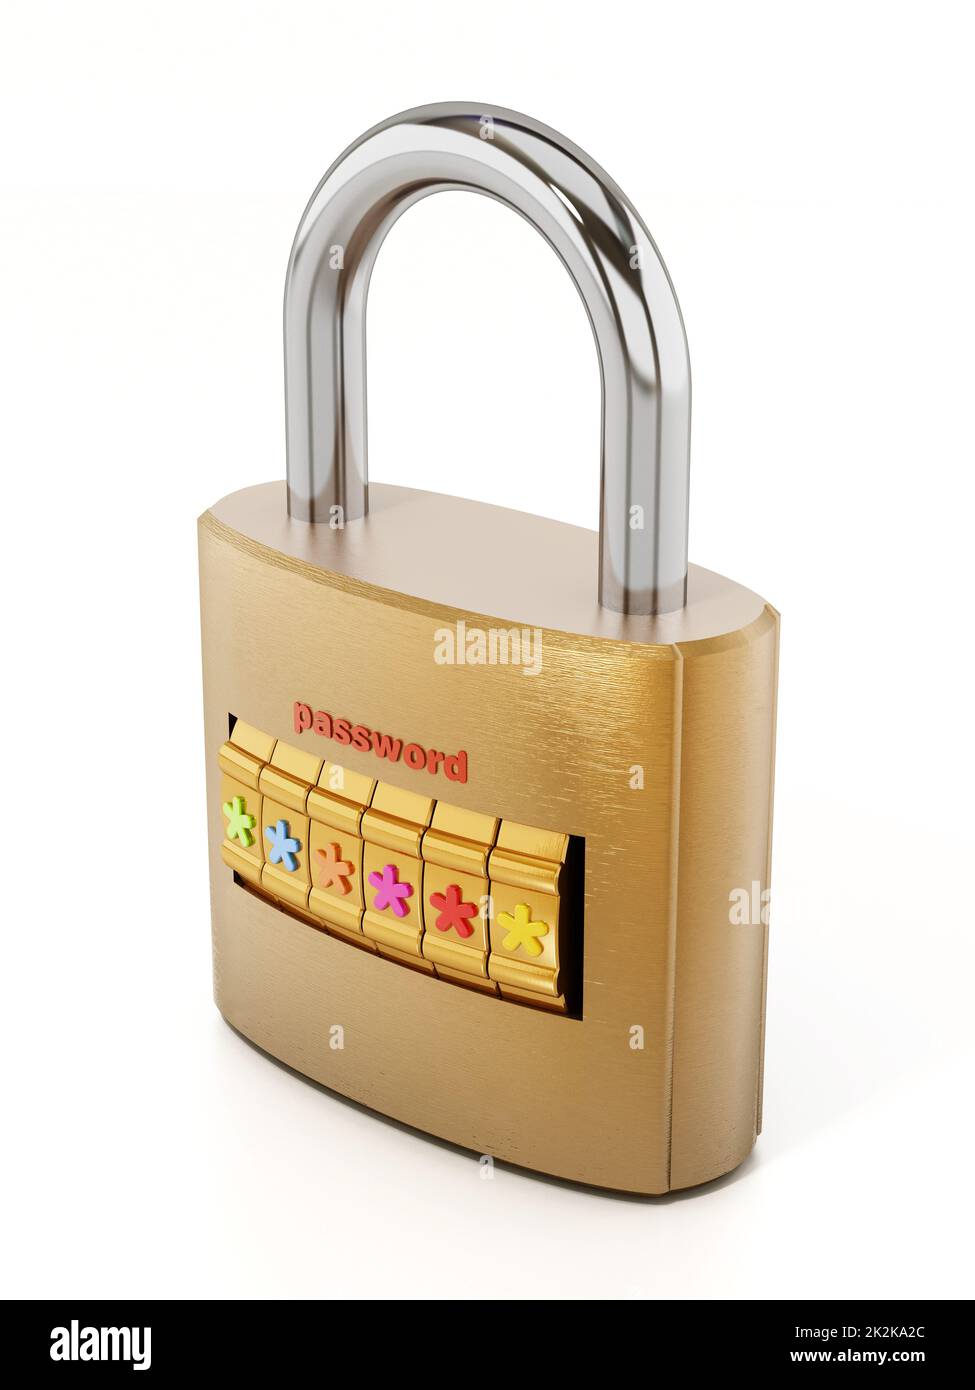 Lucchetto con schermata della password isolata su sfondo bianco. Illustrazione 3D Foto Stock